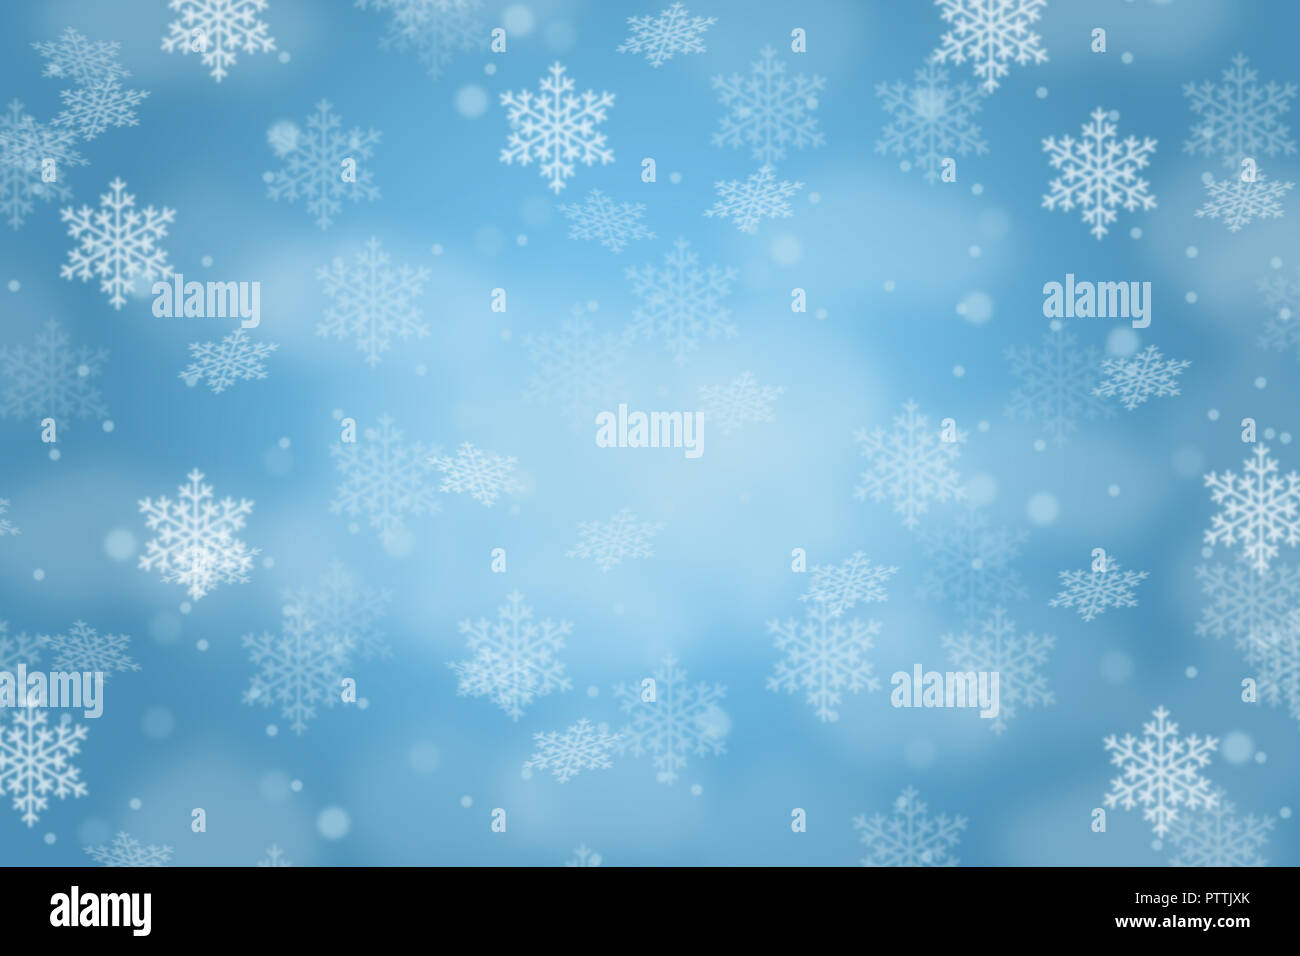 Weihnachten Hintergrund Karte Muster deko Schnee Schneeflocken schneit Space copyspace kopieren Stockfoto